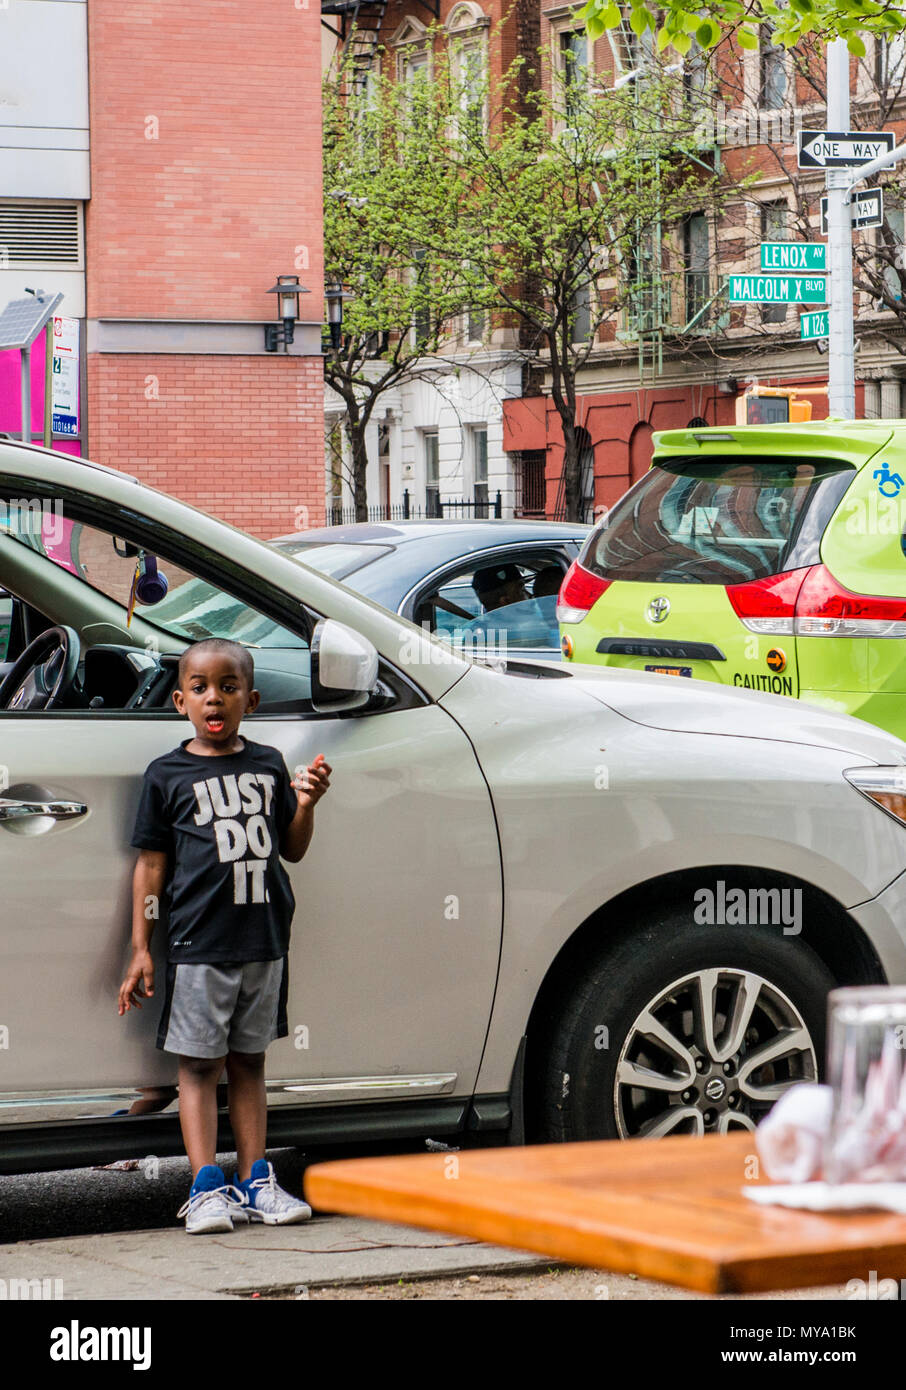 Junge Junge das Tragen eines "Just Do It" stand neben dem Auto, ziehen Gesicht, Harlem, New York City, USA Stockfoto